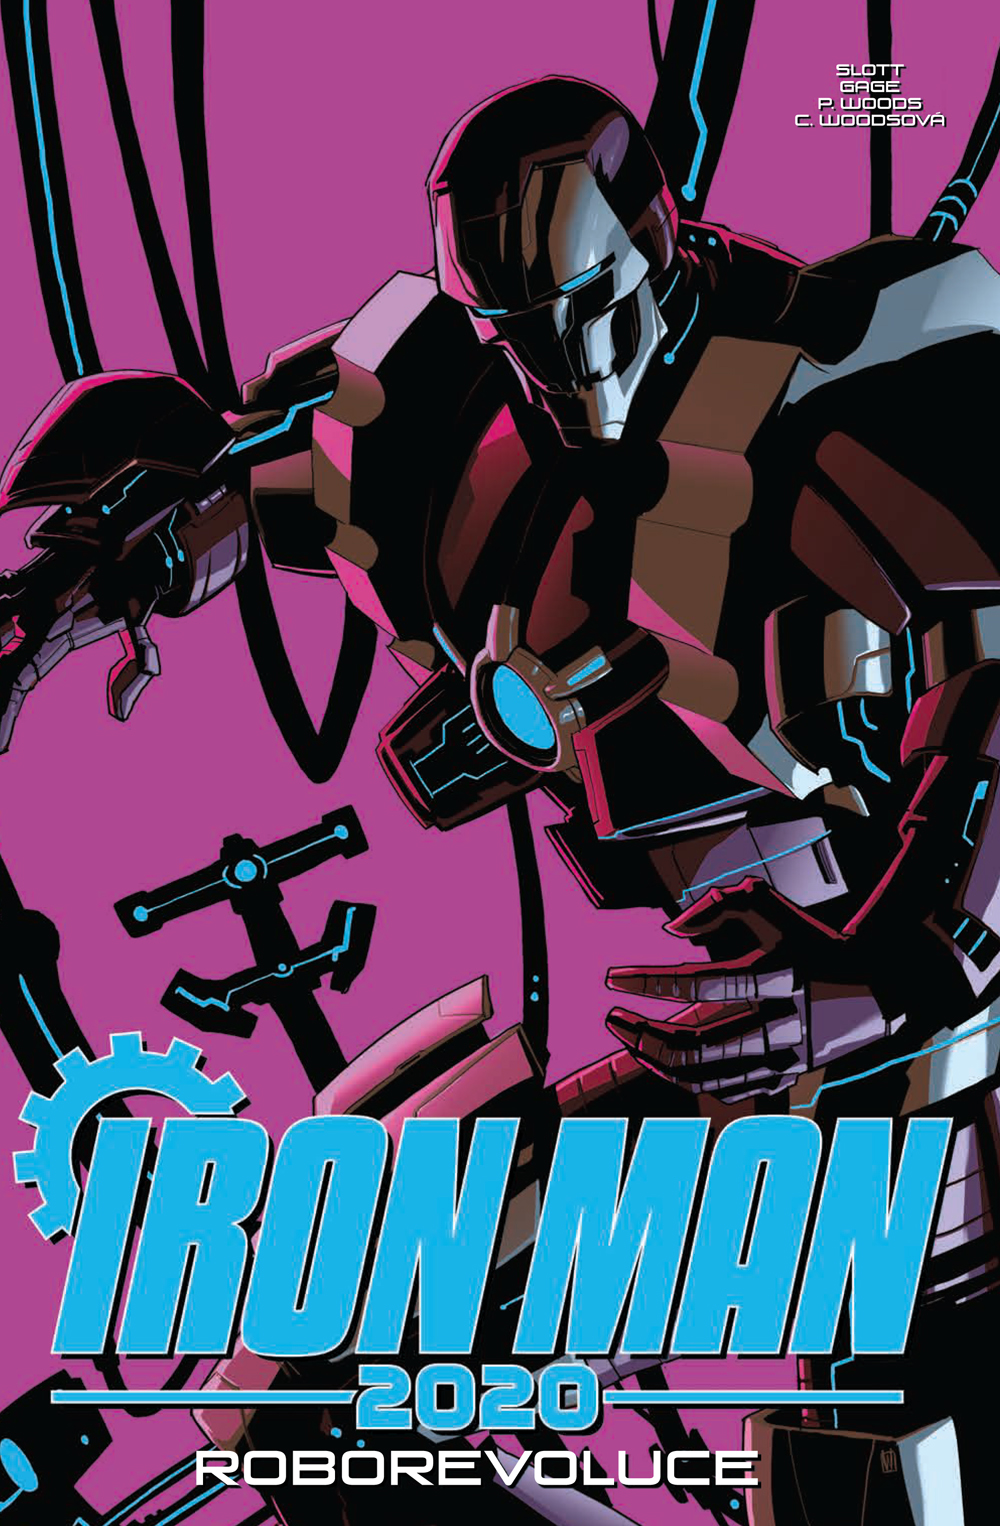 obrázek k novince - Iron Man 2020: Roborevoluce